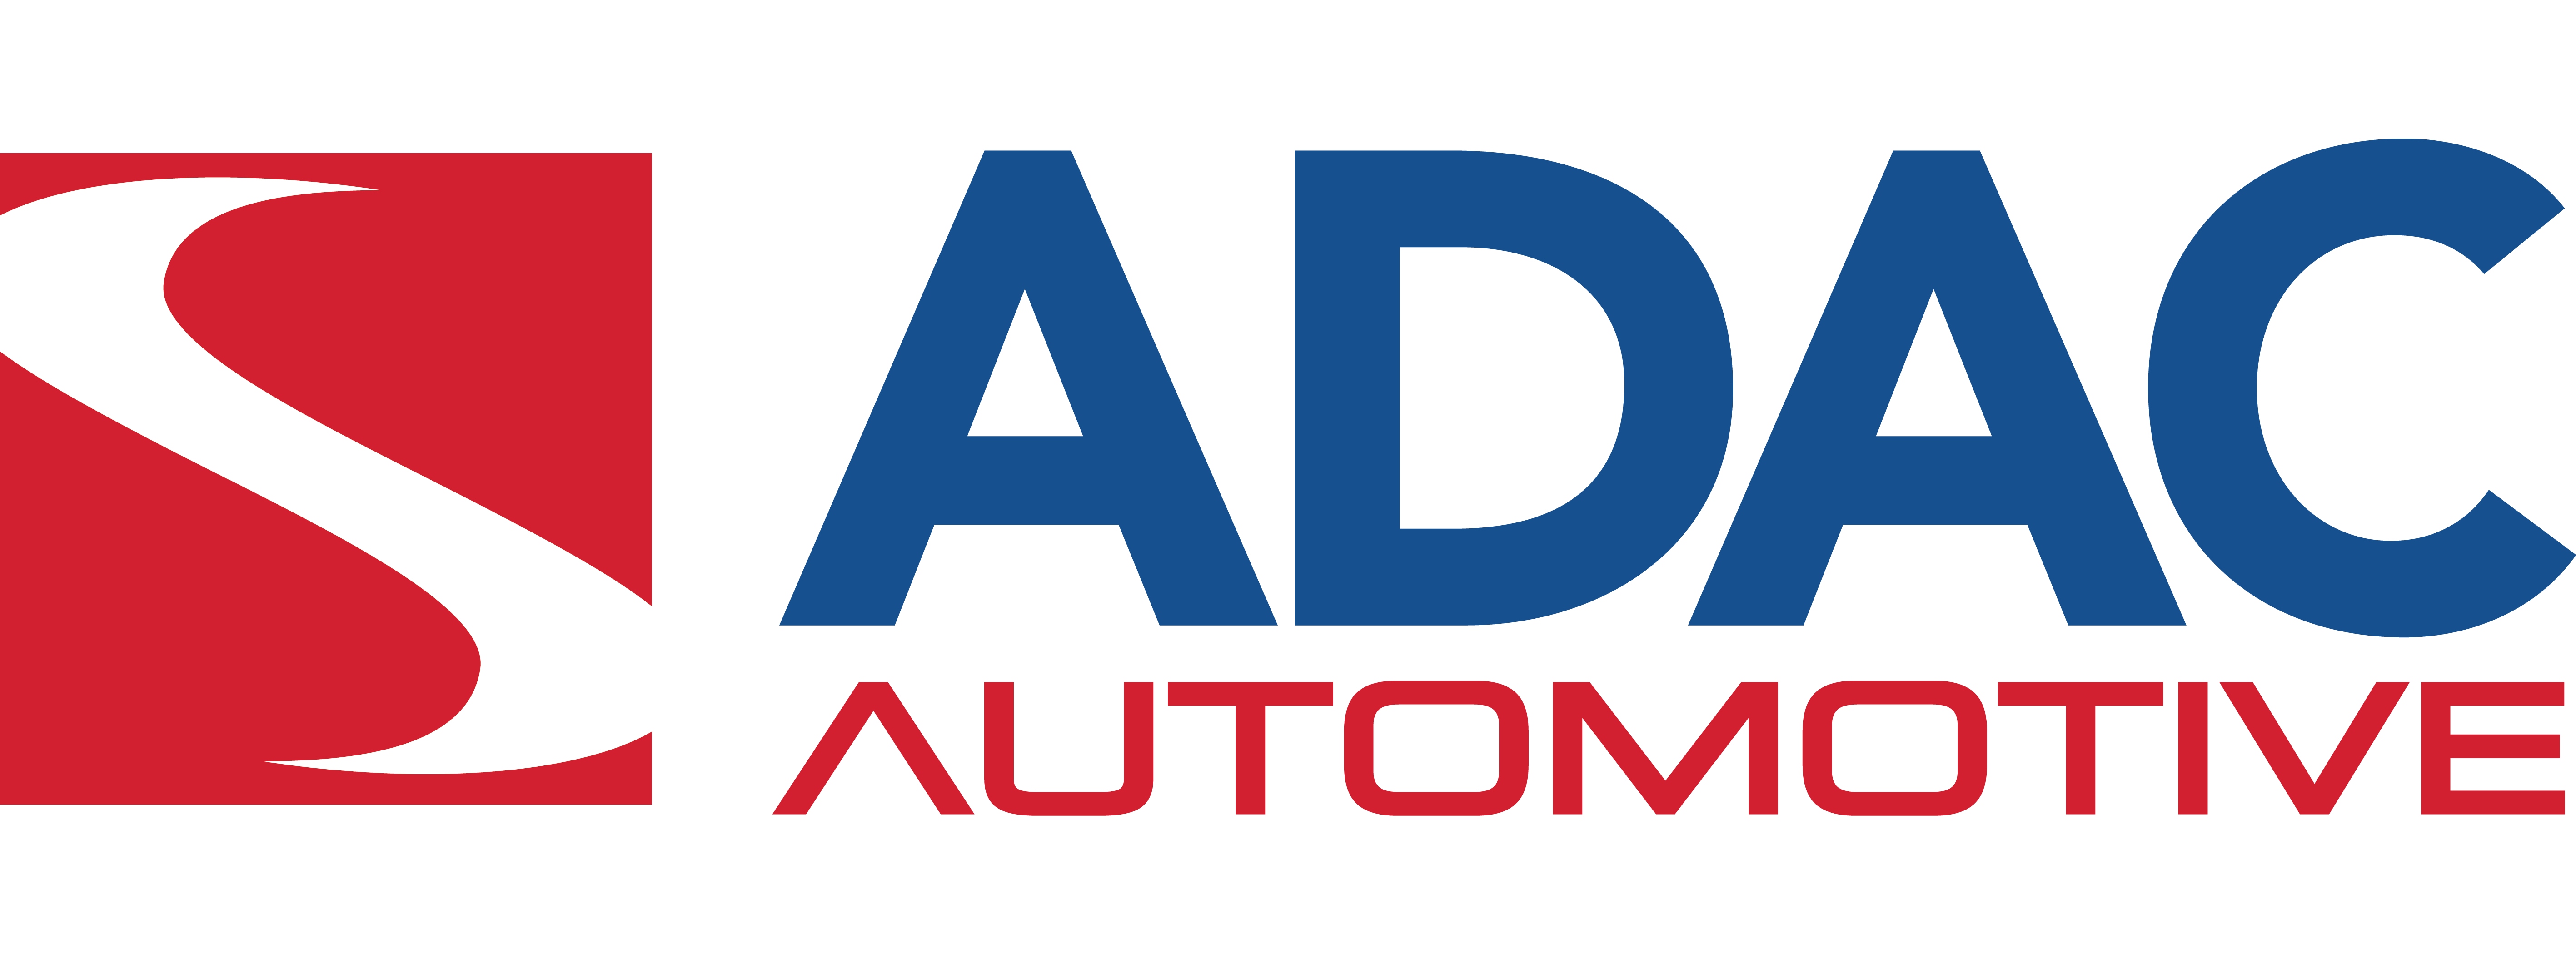 Adac Logo PNG - 113998